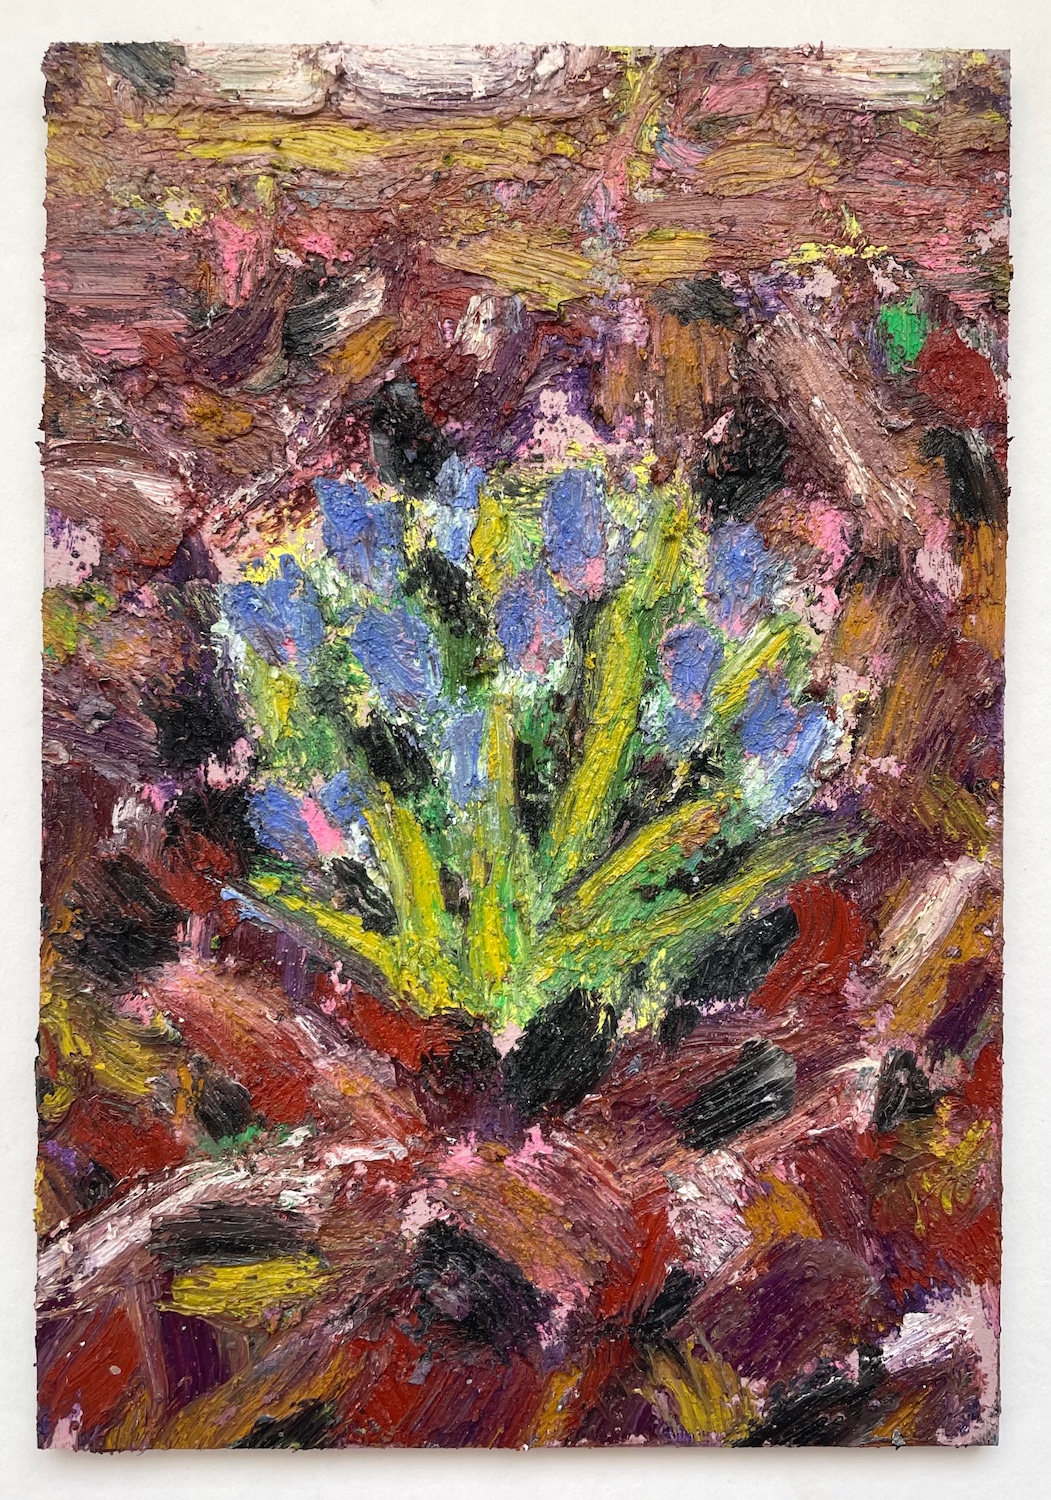 'Crocuses', Hannah Truran, Oil stick and oil paint on ply, 16 x 11 cm